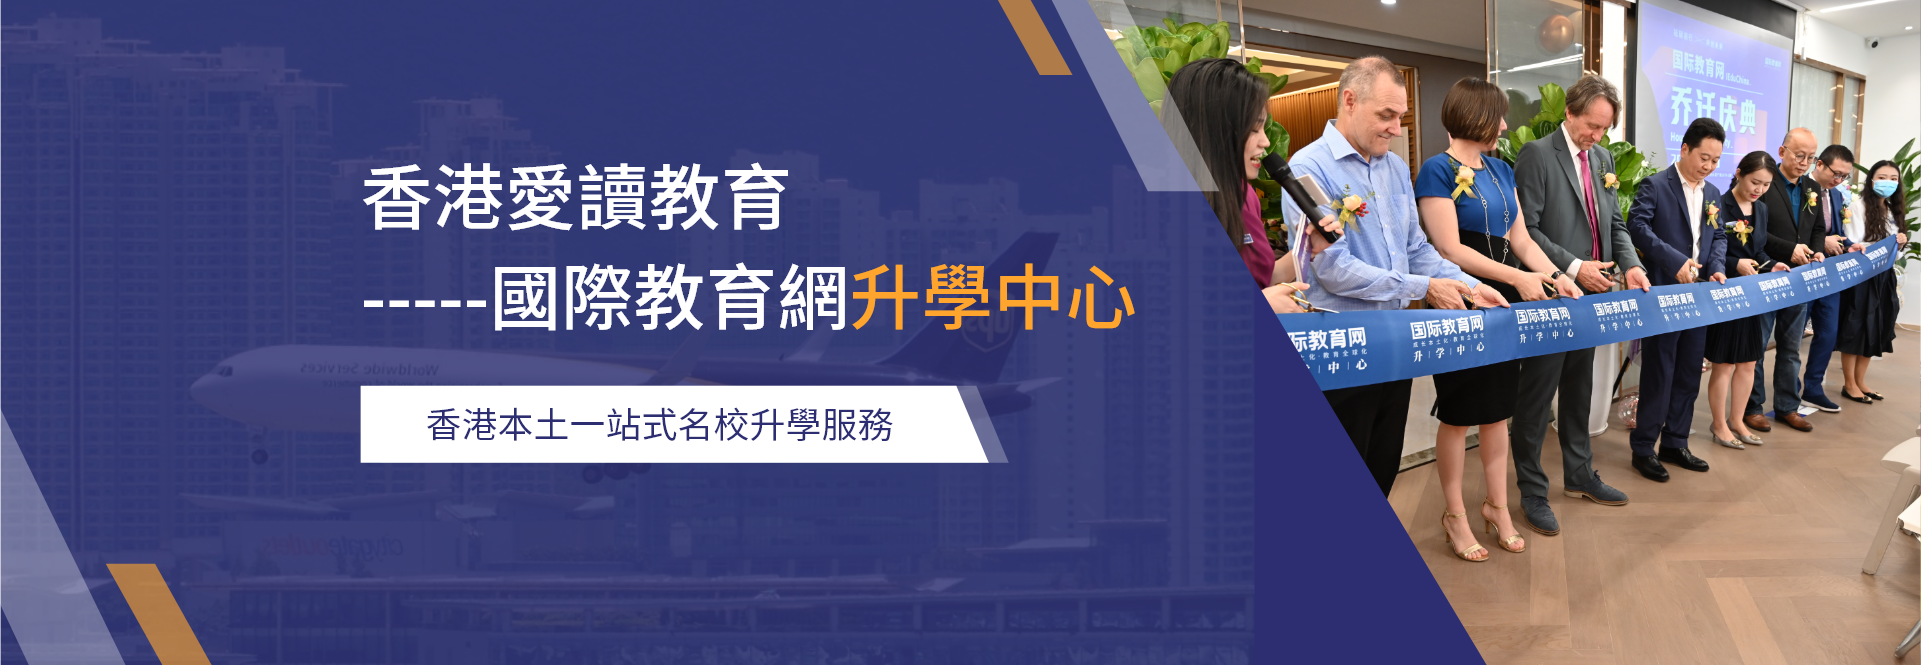 香港國際升學中心 香港優質學校一站式VIP名校升學服務平台